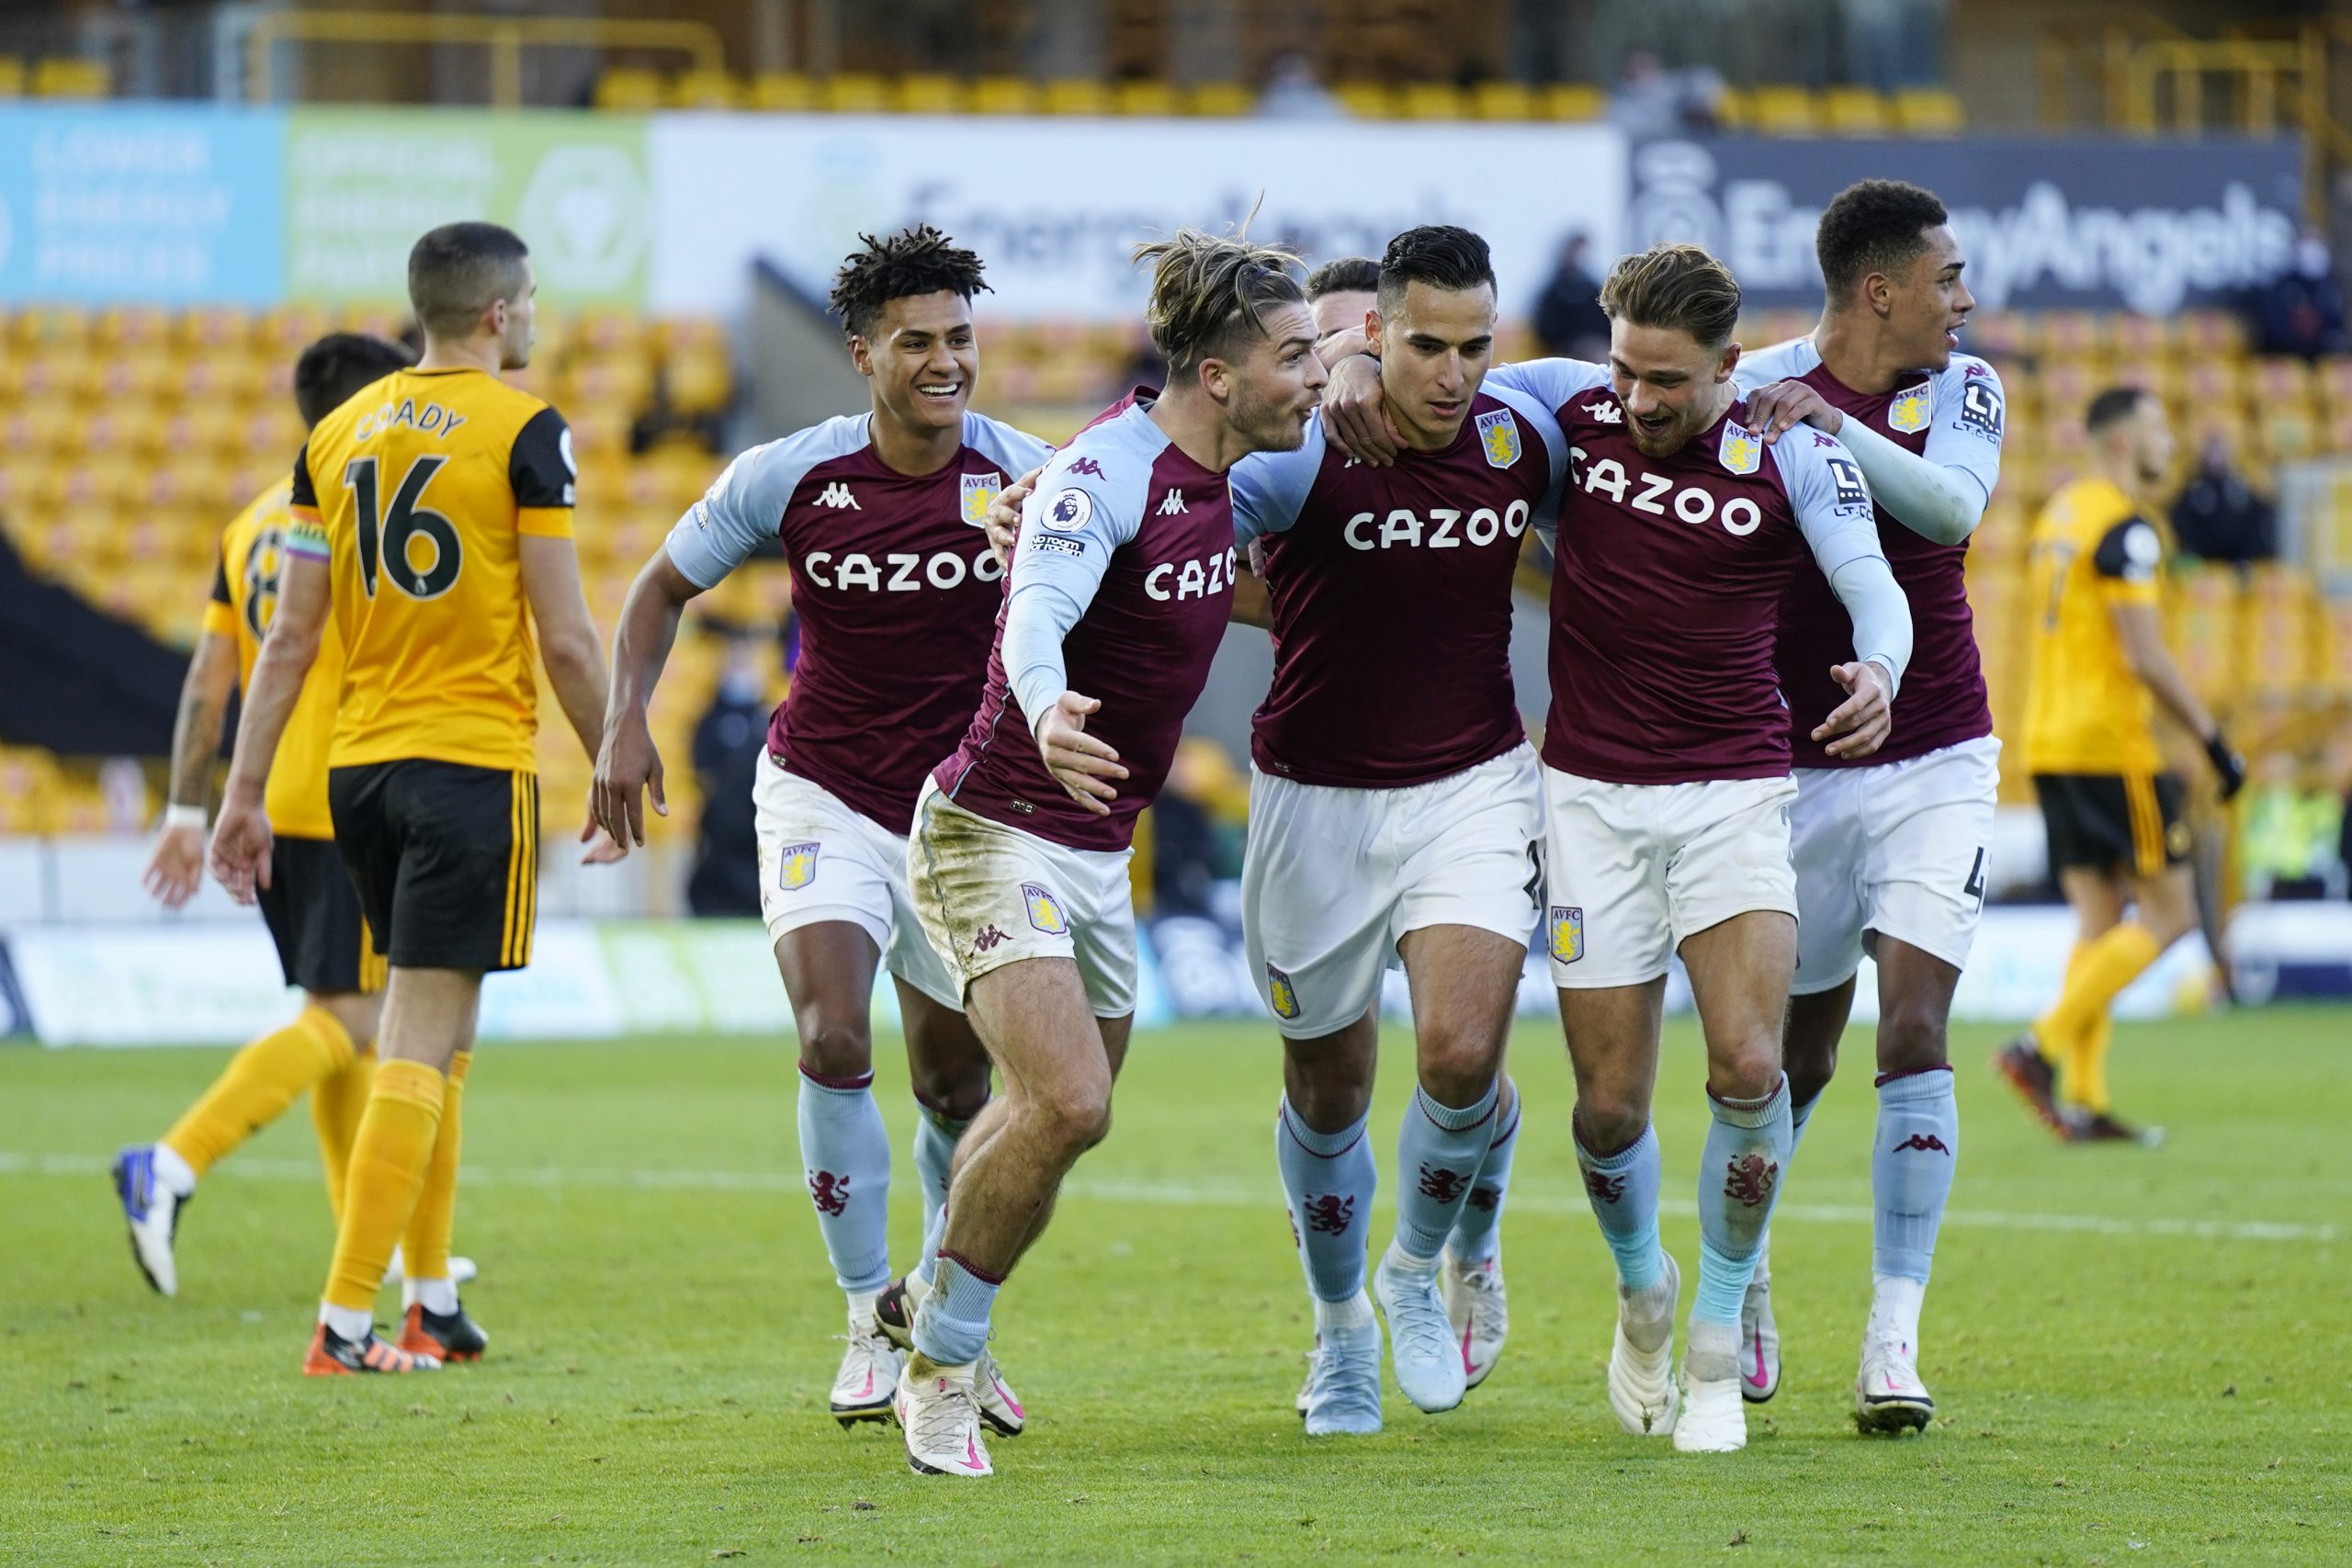 4-2-3-1 Aston Villa Predicted Lineup Vs Brighton (Aston Villa players are celebrating in the photo)